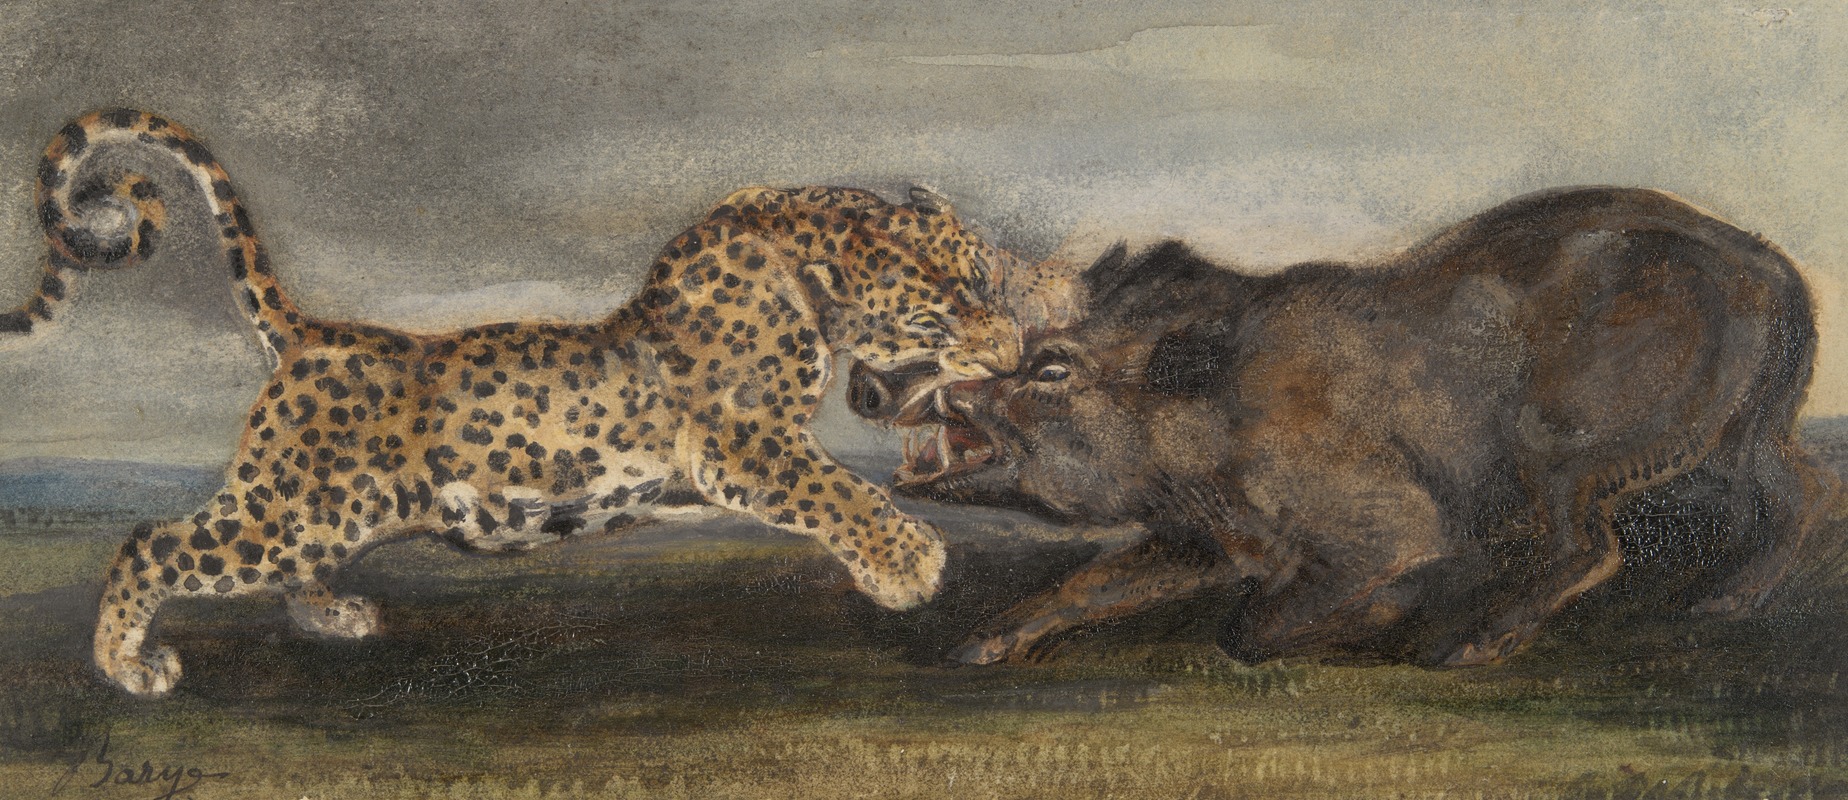 Antoine-Louis Barye - Léopard aux prises avec un sanglier (Léopard Struggling with a Wild Boar)